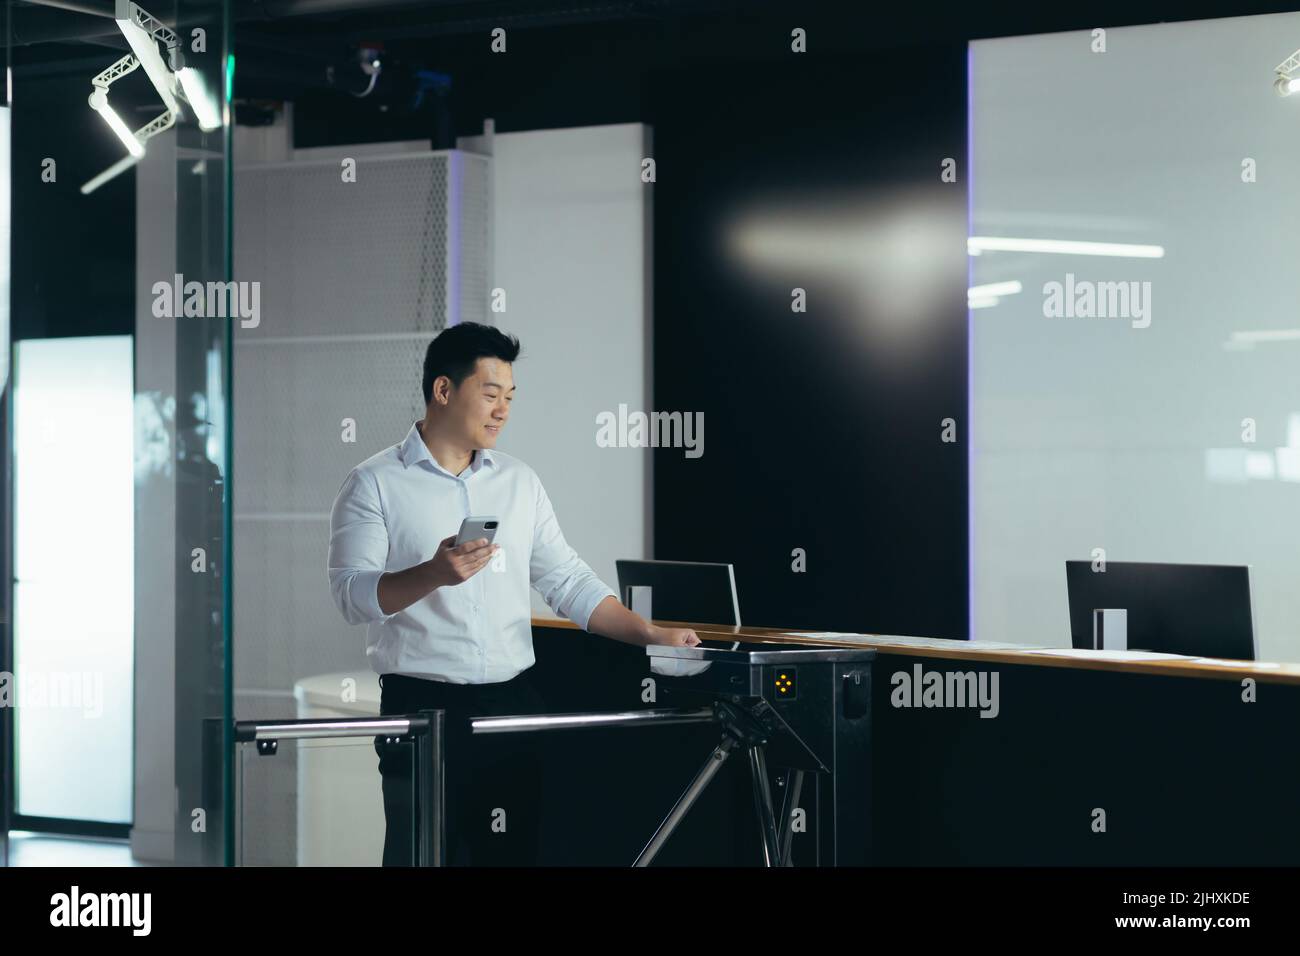 Ein asiatischer Arbeiter tritt durch die Tür ins Büro, öffnet das Schloss mit einer Plastikkarte, ein Geschäftsmann in einem Hemd mit einem Telefon Stockfoto